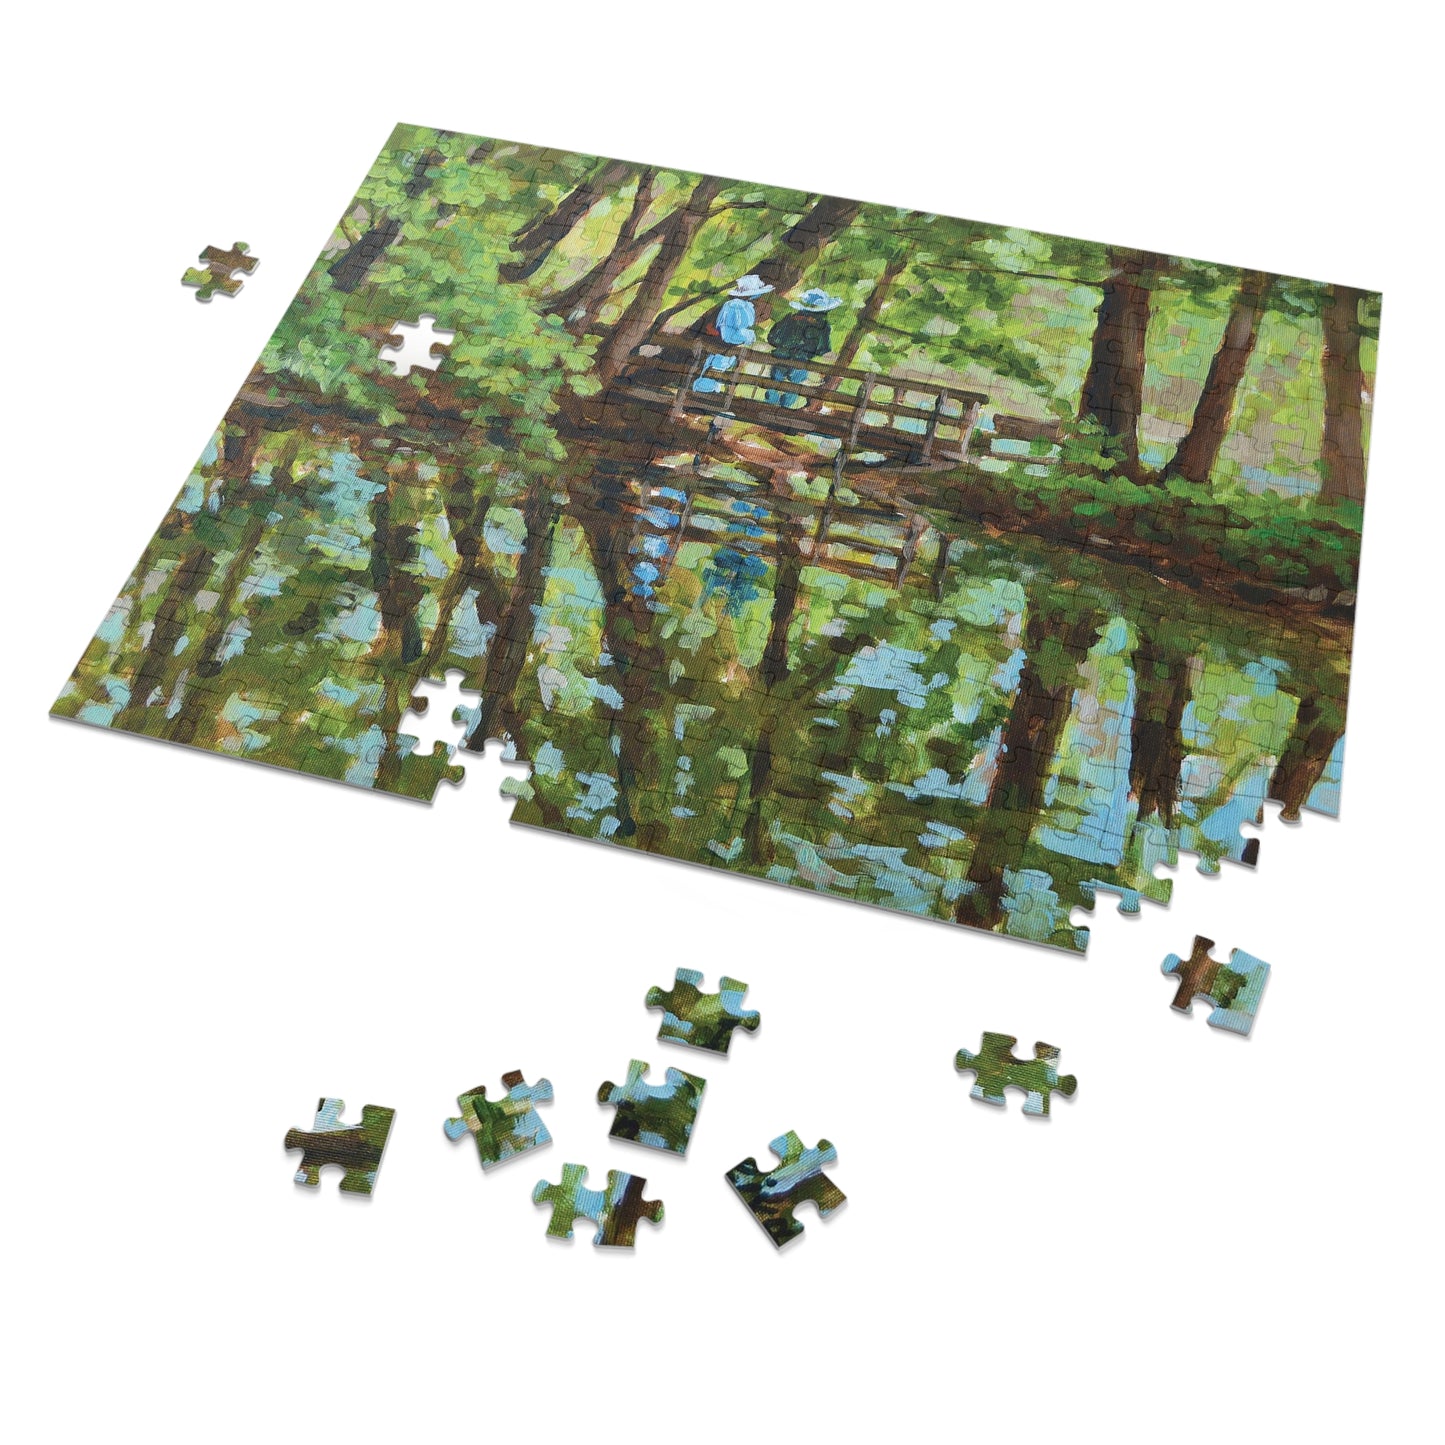 Jigsaw Puzzle - I Like Monet